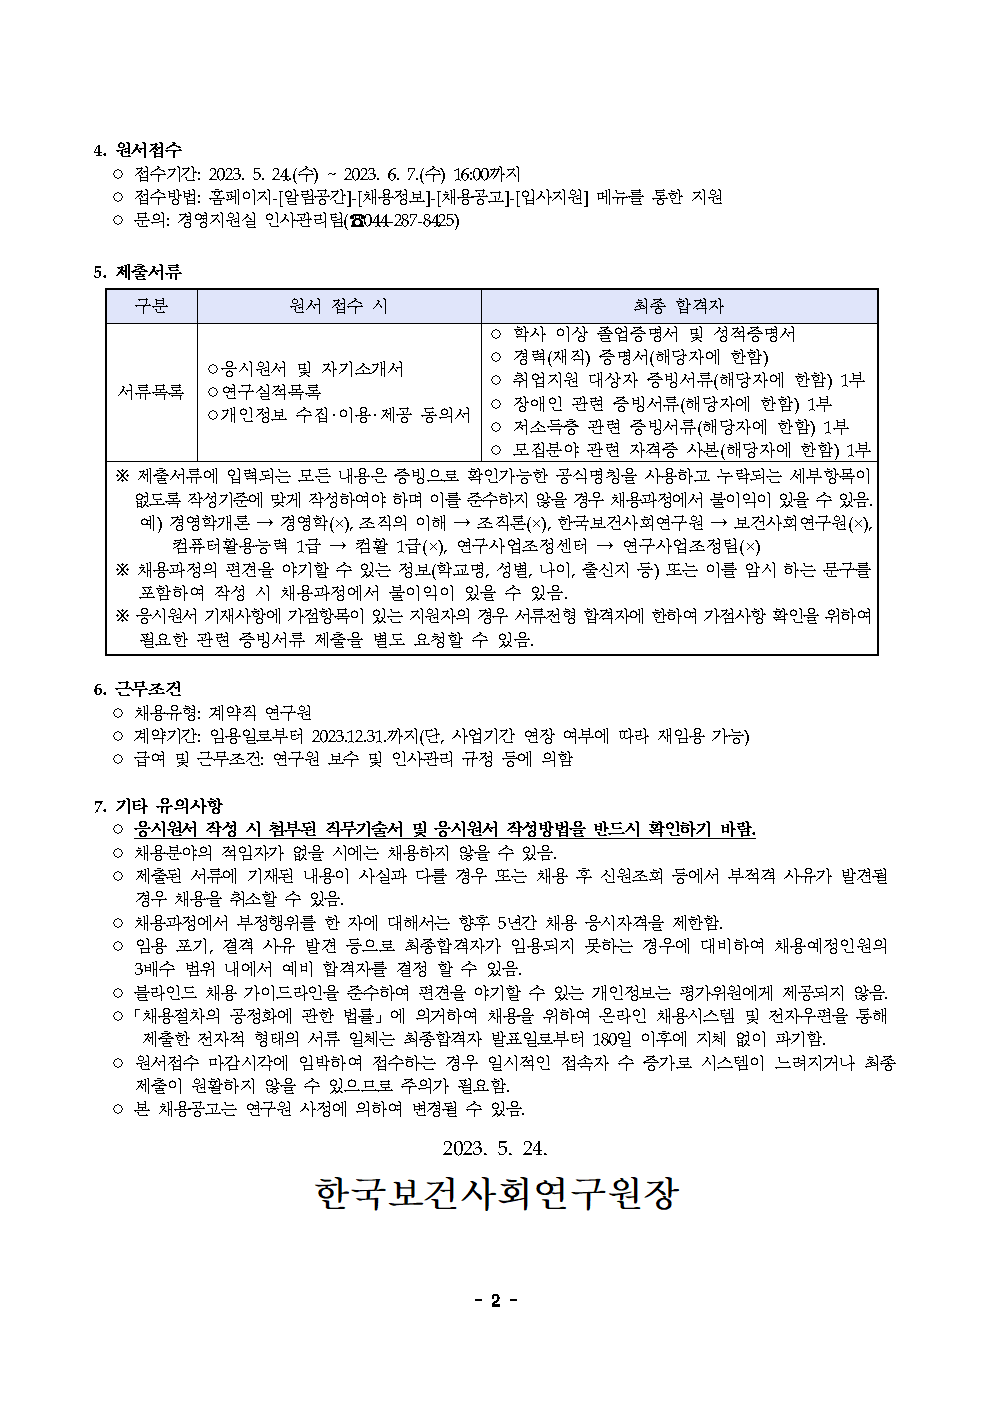 (2/2) 한국보건사회연구원 계약직 연구원 채용 공고 - 자세한 내용은 하단 참조